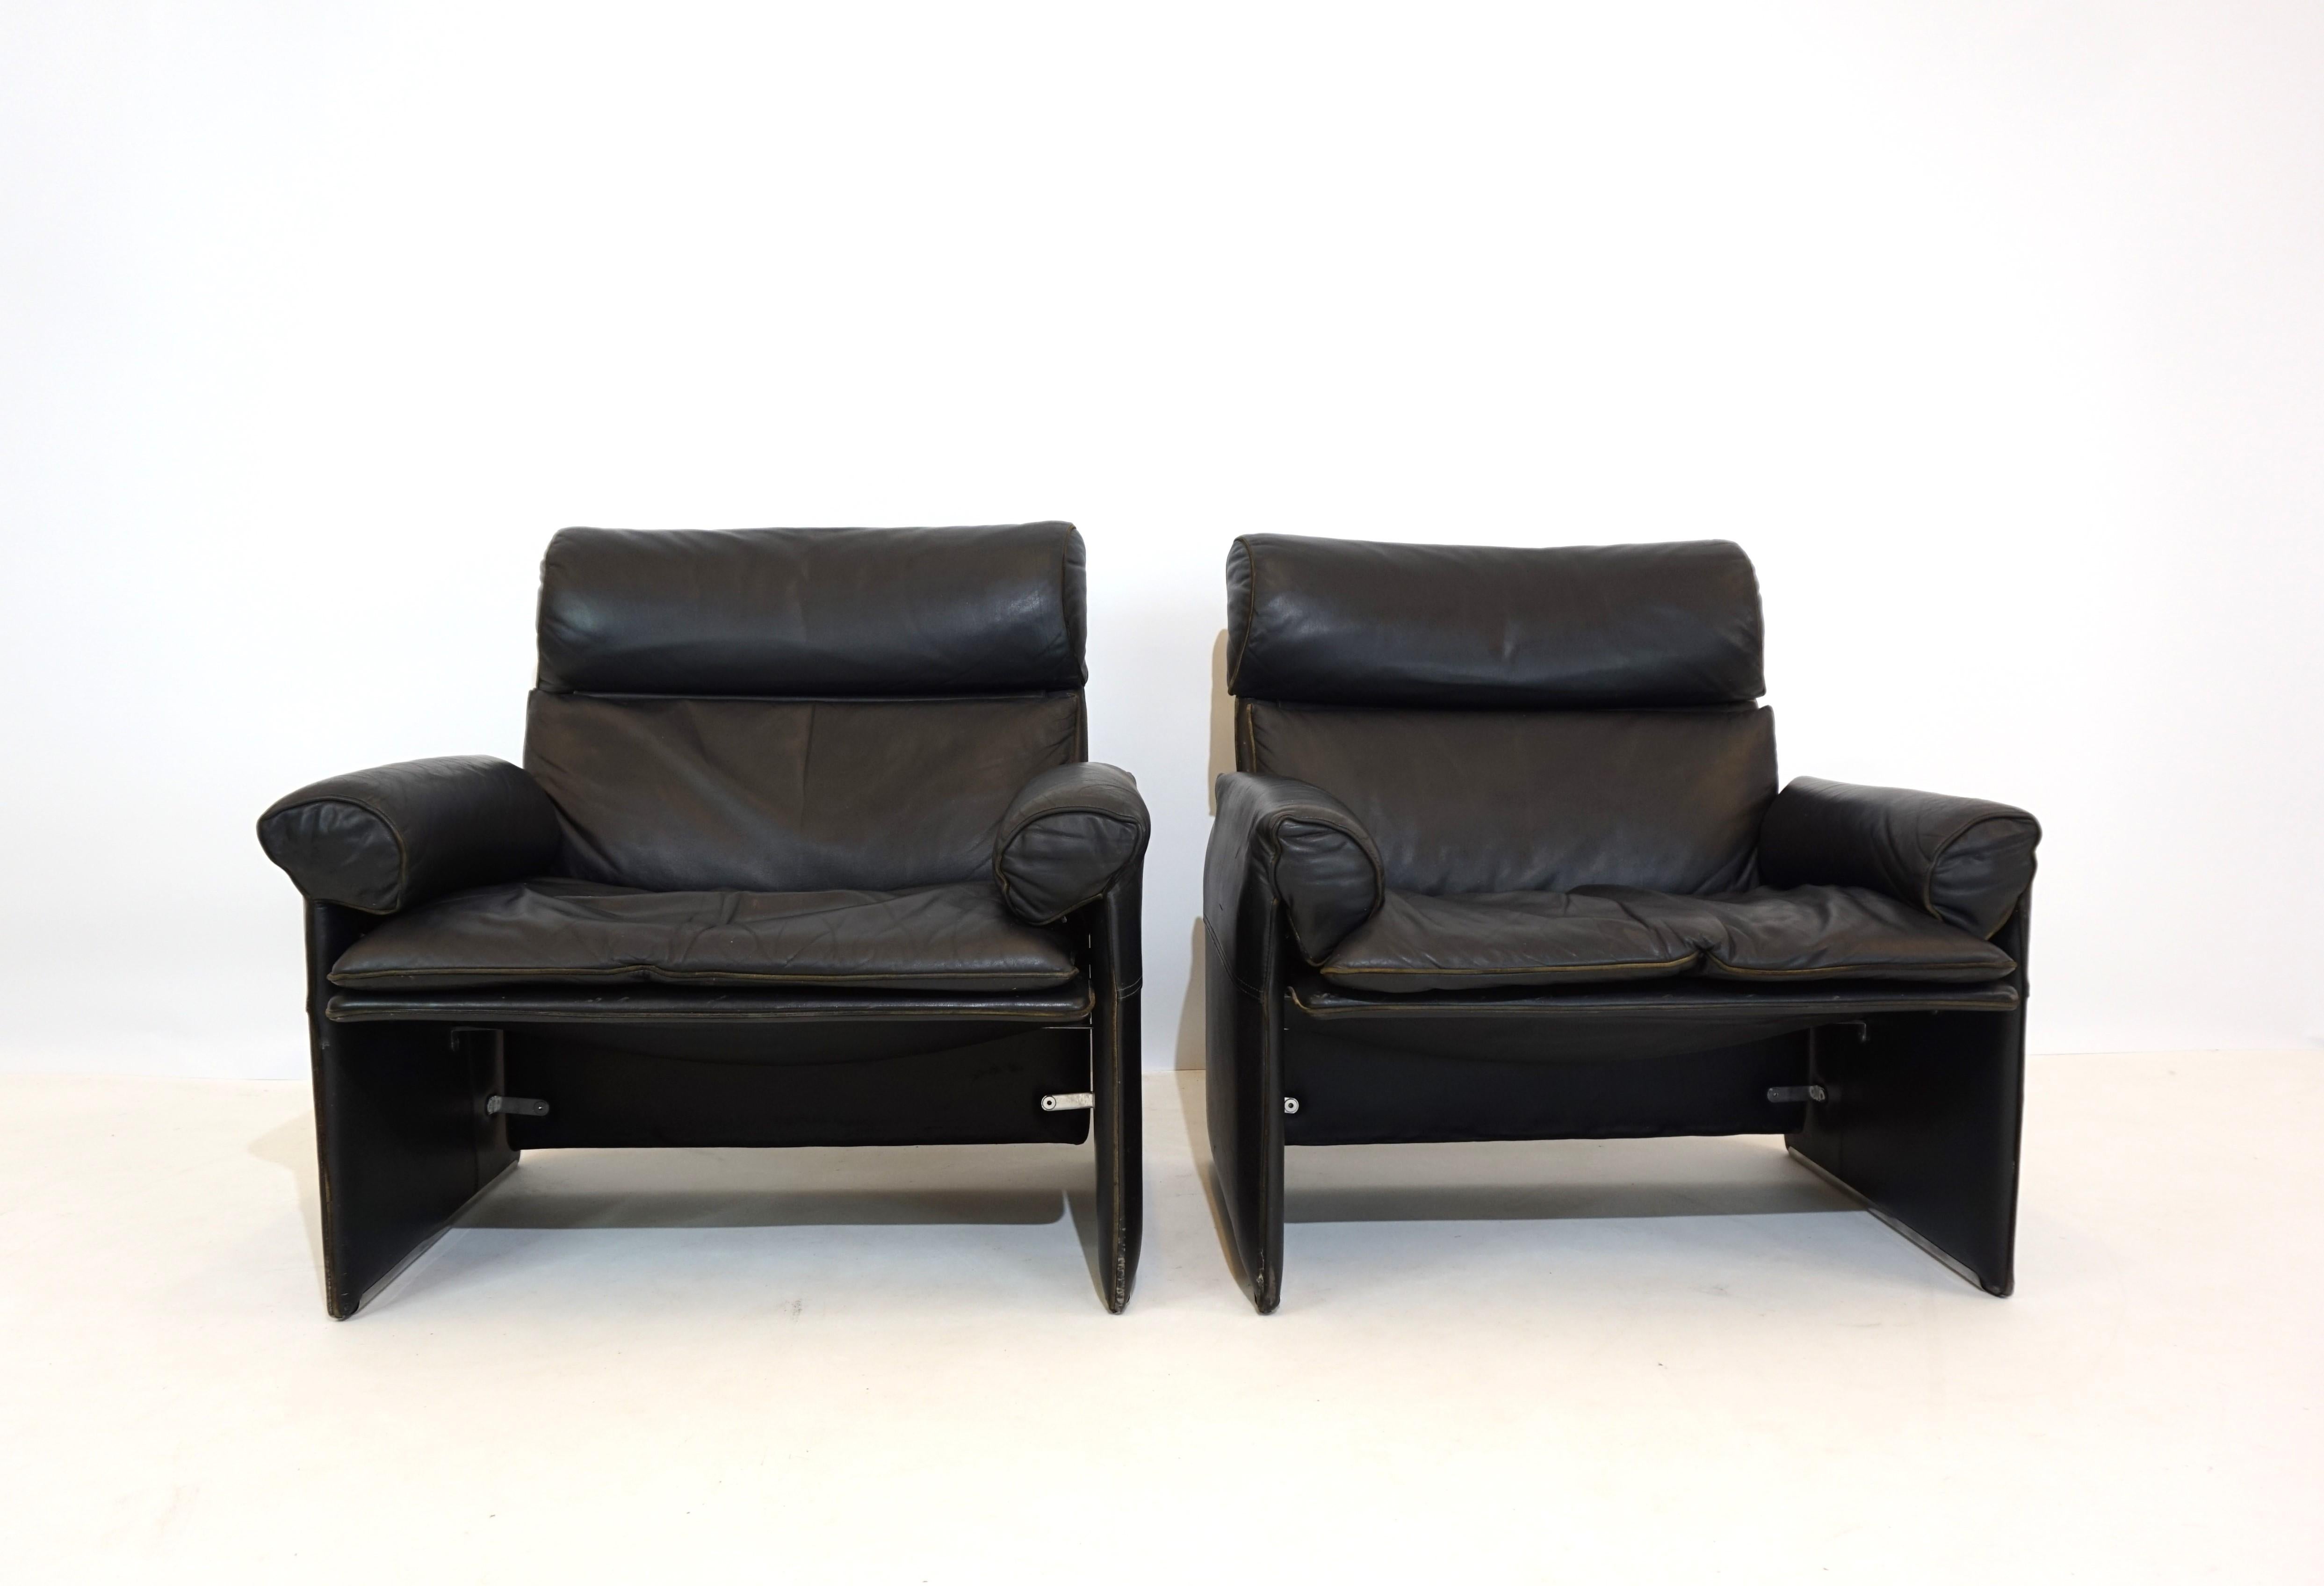 Diese beiden Saporiti-Sessel aus den 70er Jahren sind in gutem Zustand. Das weiche schwarze Leder weist nur leichte Gebrauchsspuren und Patina auf. Die Rückenlehnen sind leicht federnd und die Sessel bieten einen sehr guten Sitzkomfort.

 

Der